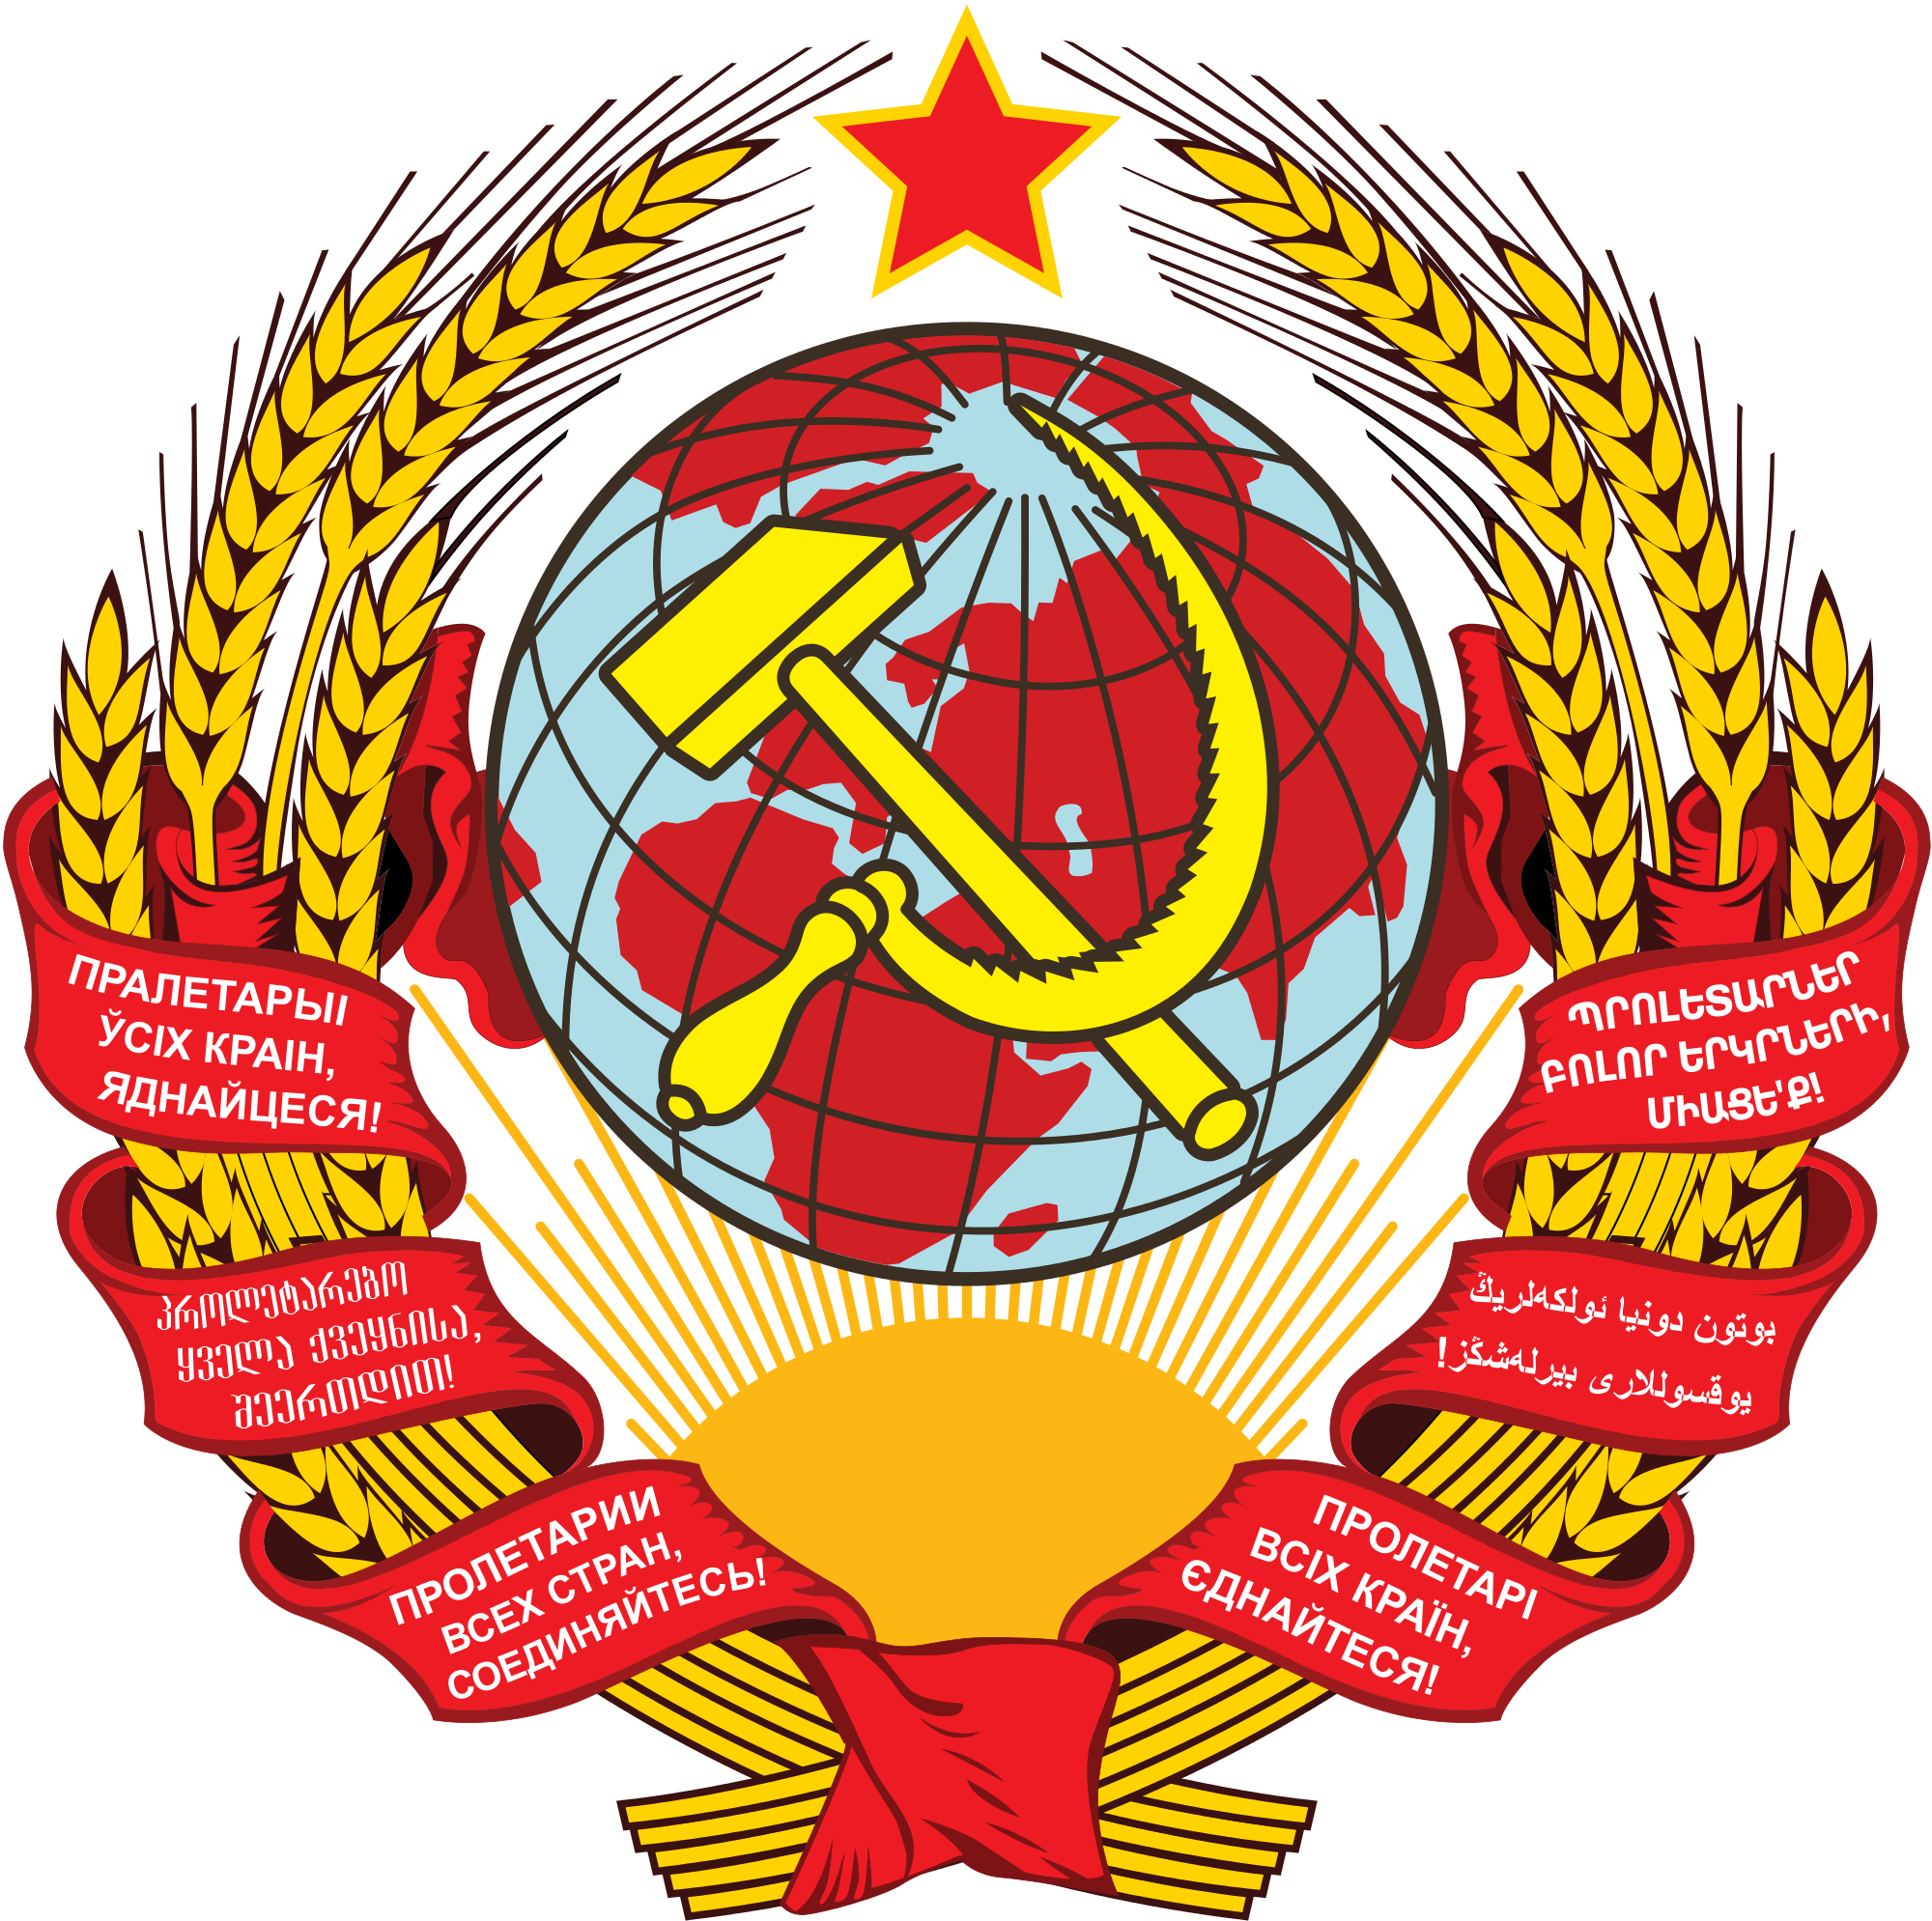 Bendera soviet